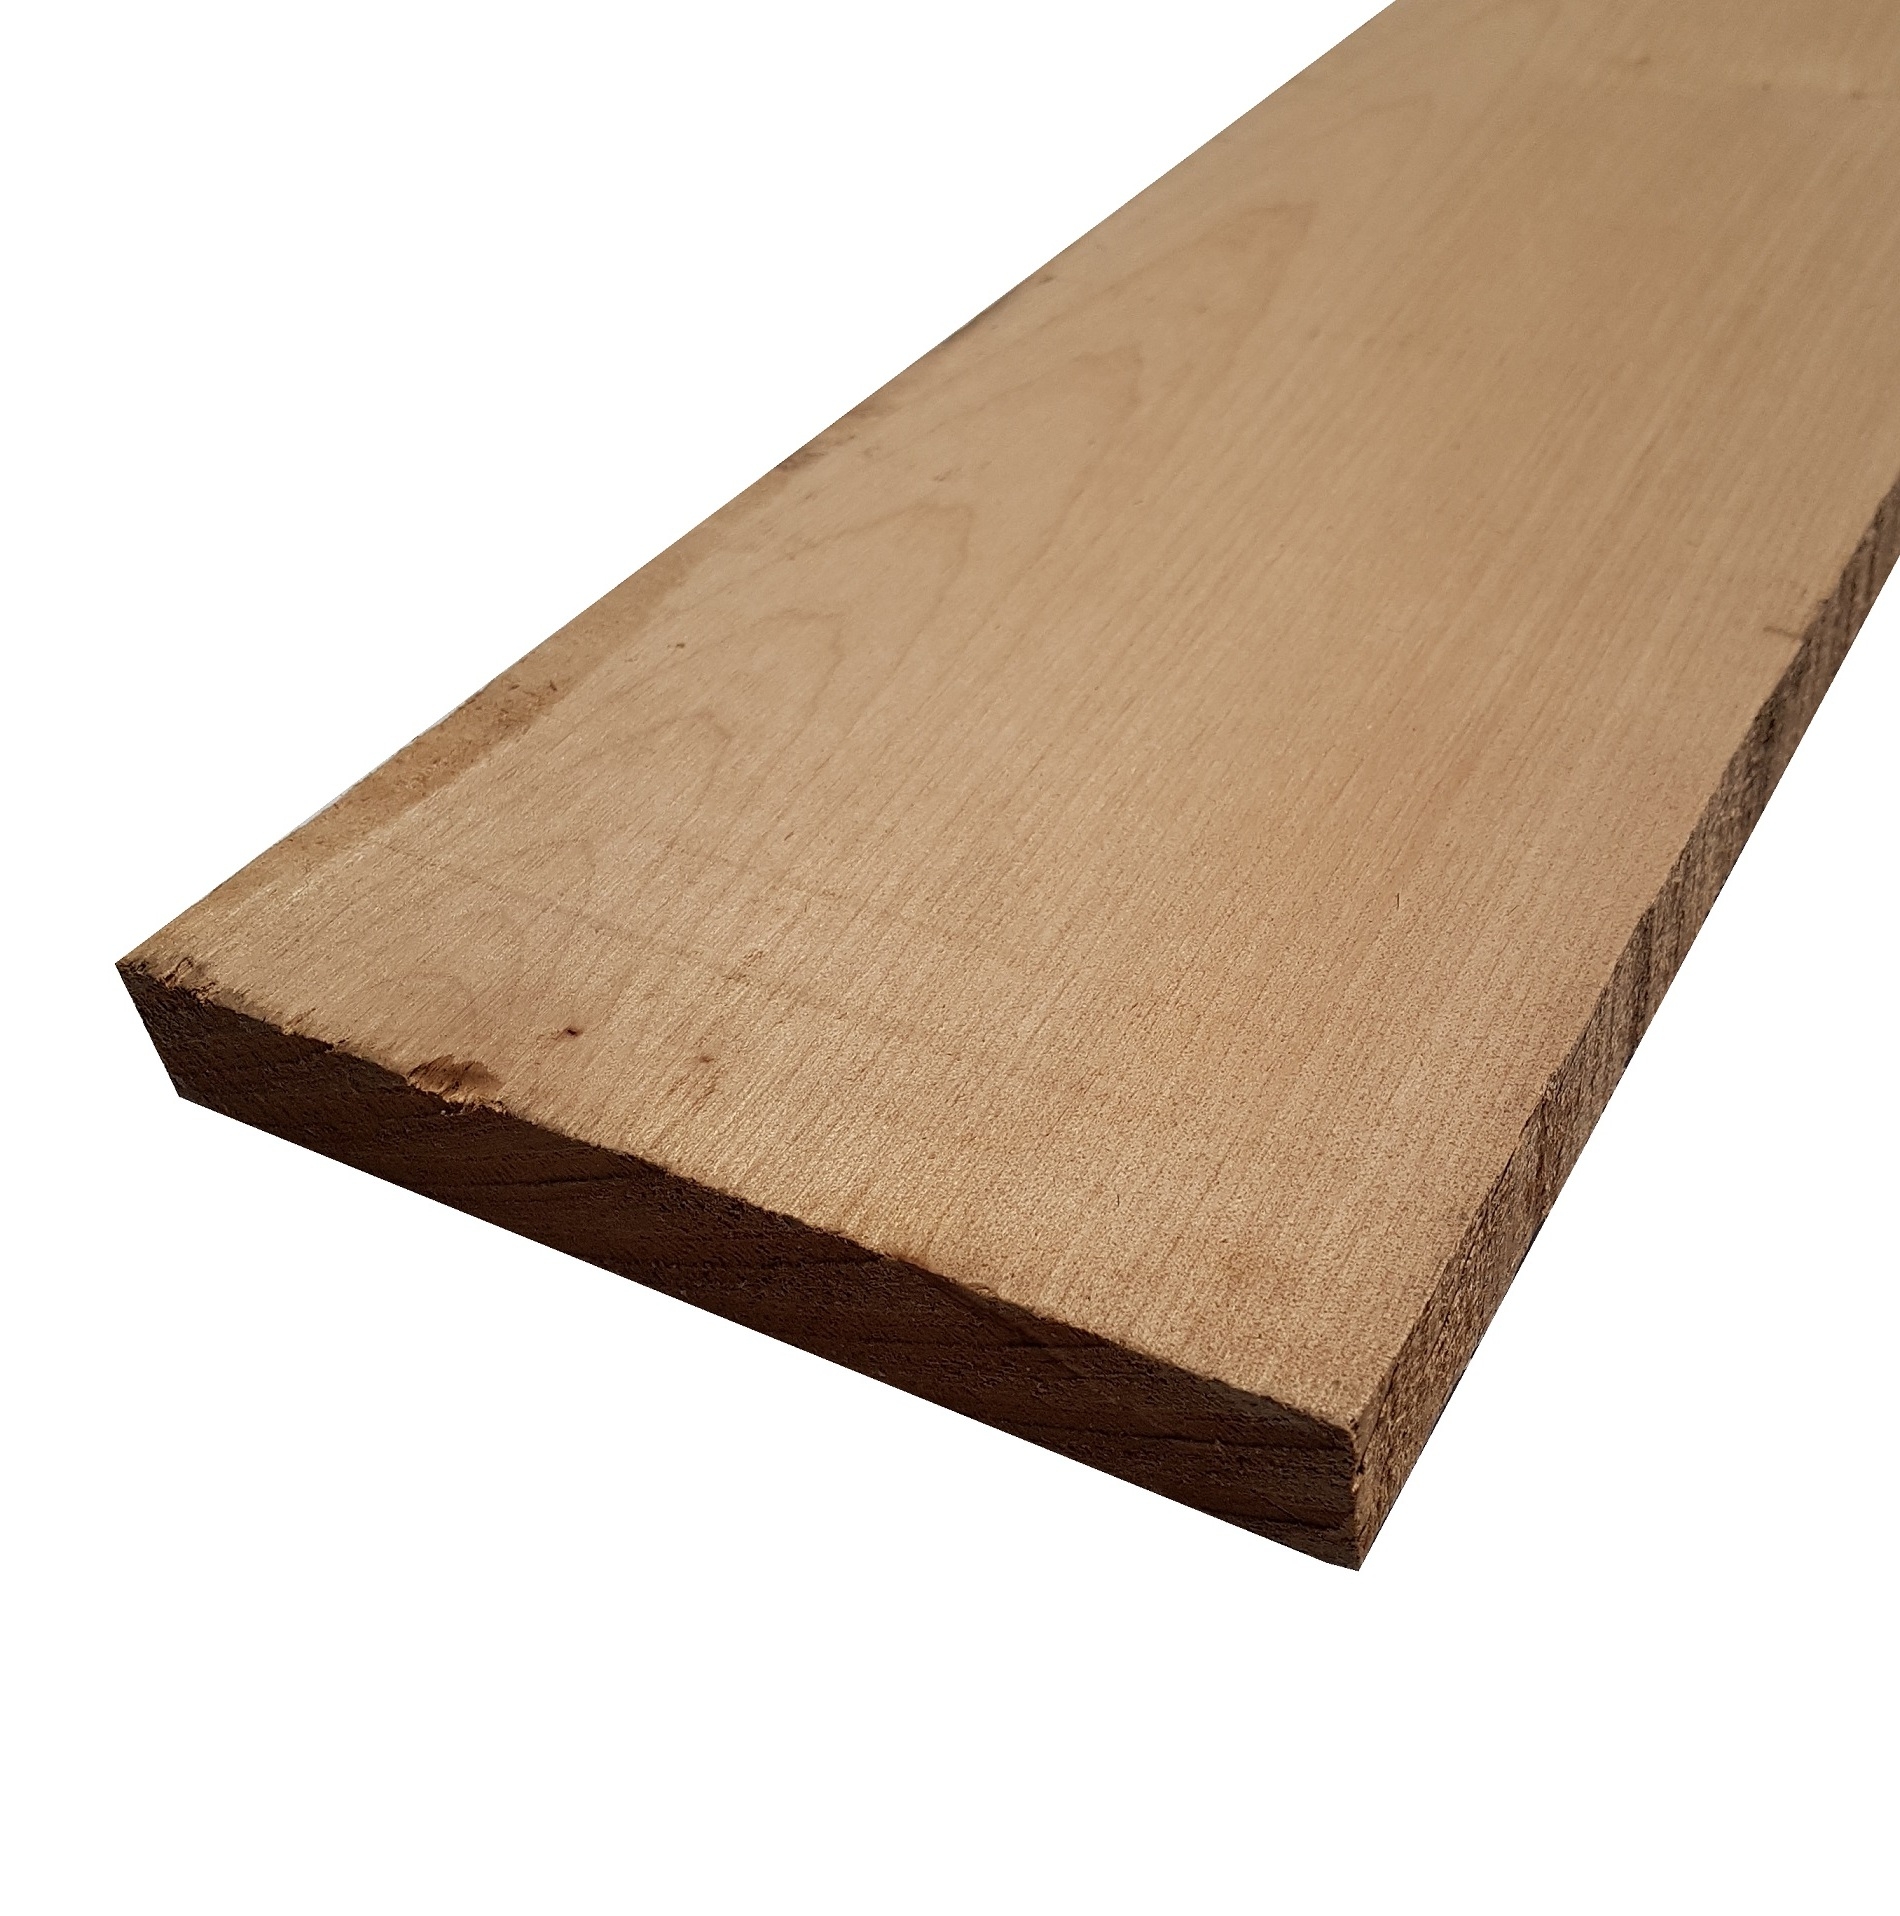 Tavola legno di Acero Pacific Coast Maple Calibrato refilato grezzo mm 24 x 180 x 1800